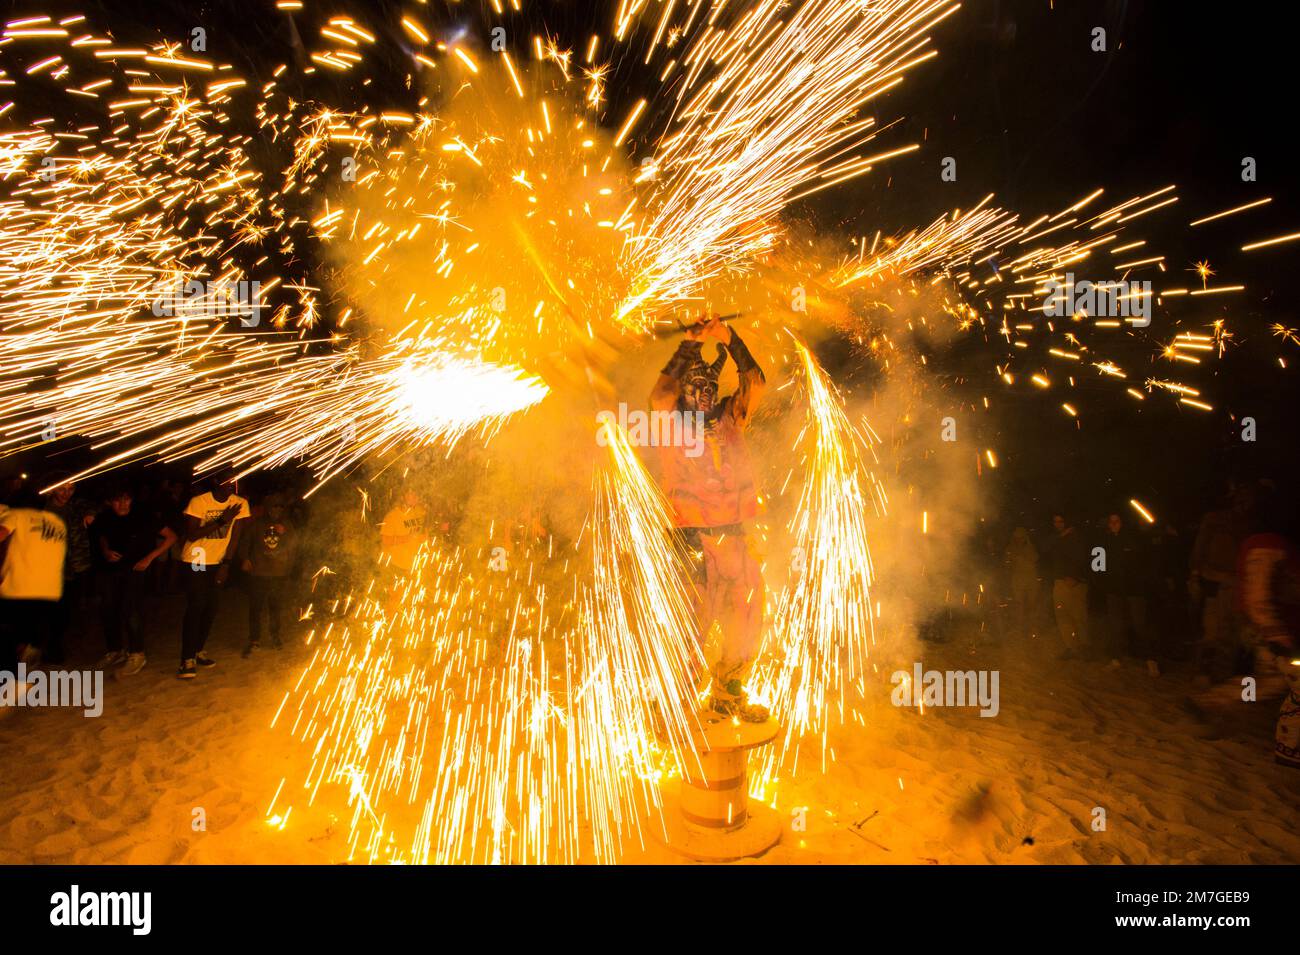 Feuerwerk am Strand von Porto Cristo. Jugendliche, die als Dämonen verkleidet sind, winken mit Feuerwerk um sie herum. Stockfoto